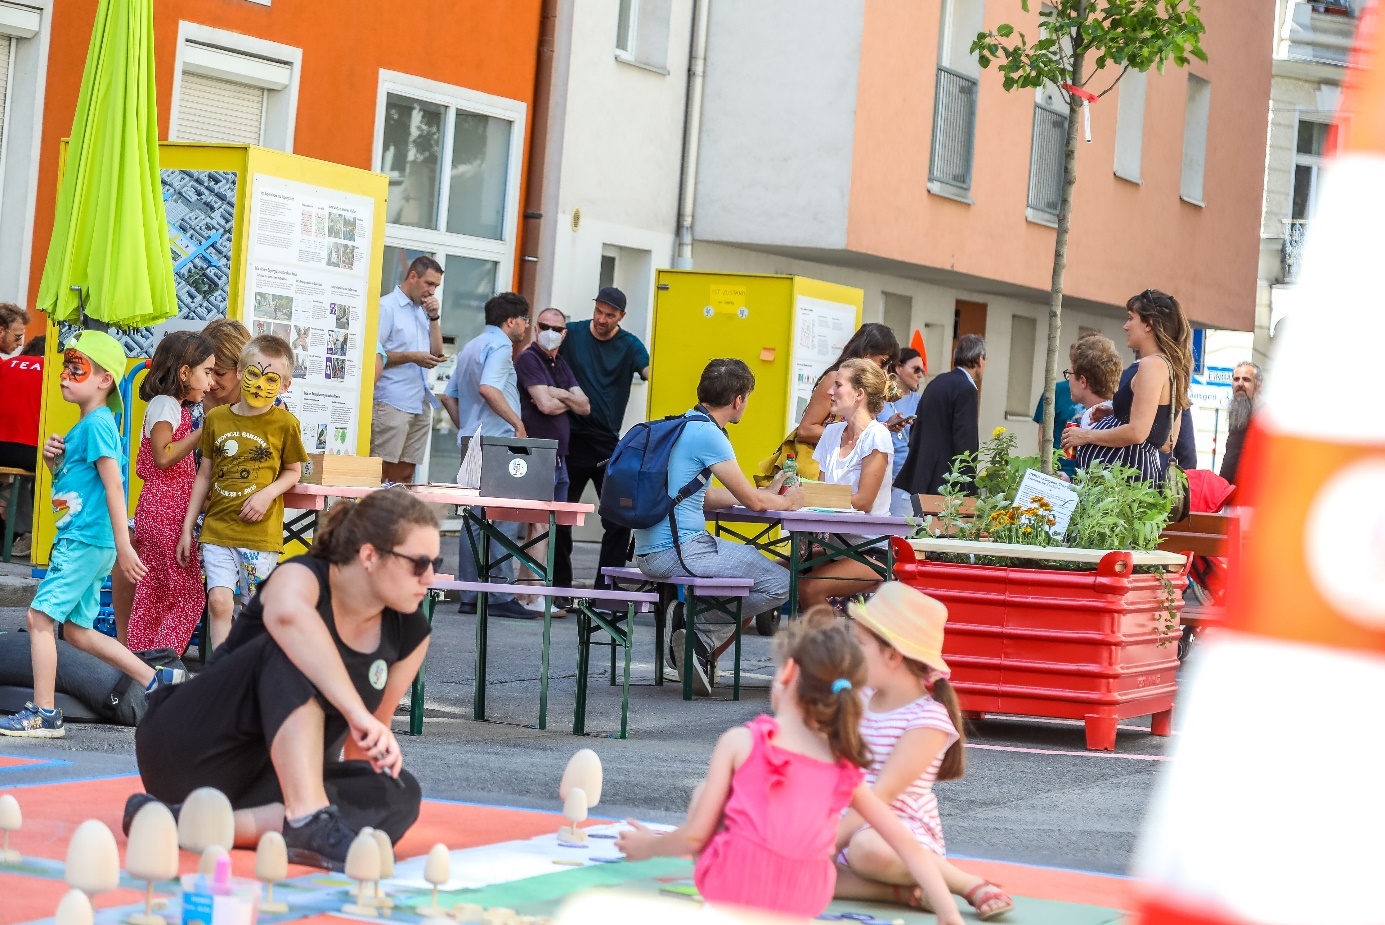 Straßenevent mit Kindern und Erwachsenen am Boden spielend. Copyright: Stadt Wien / C. Fürthner